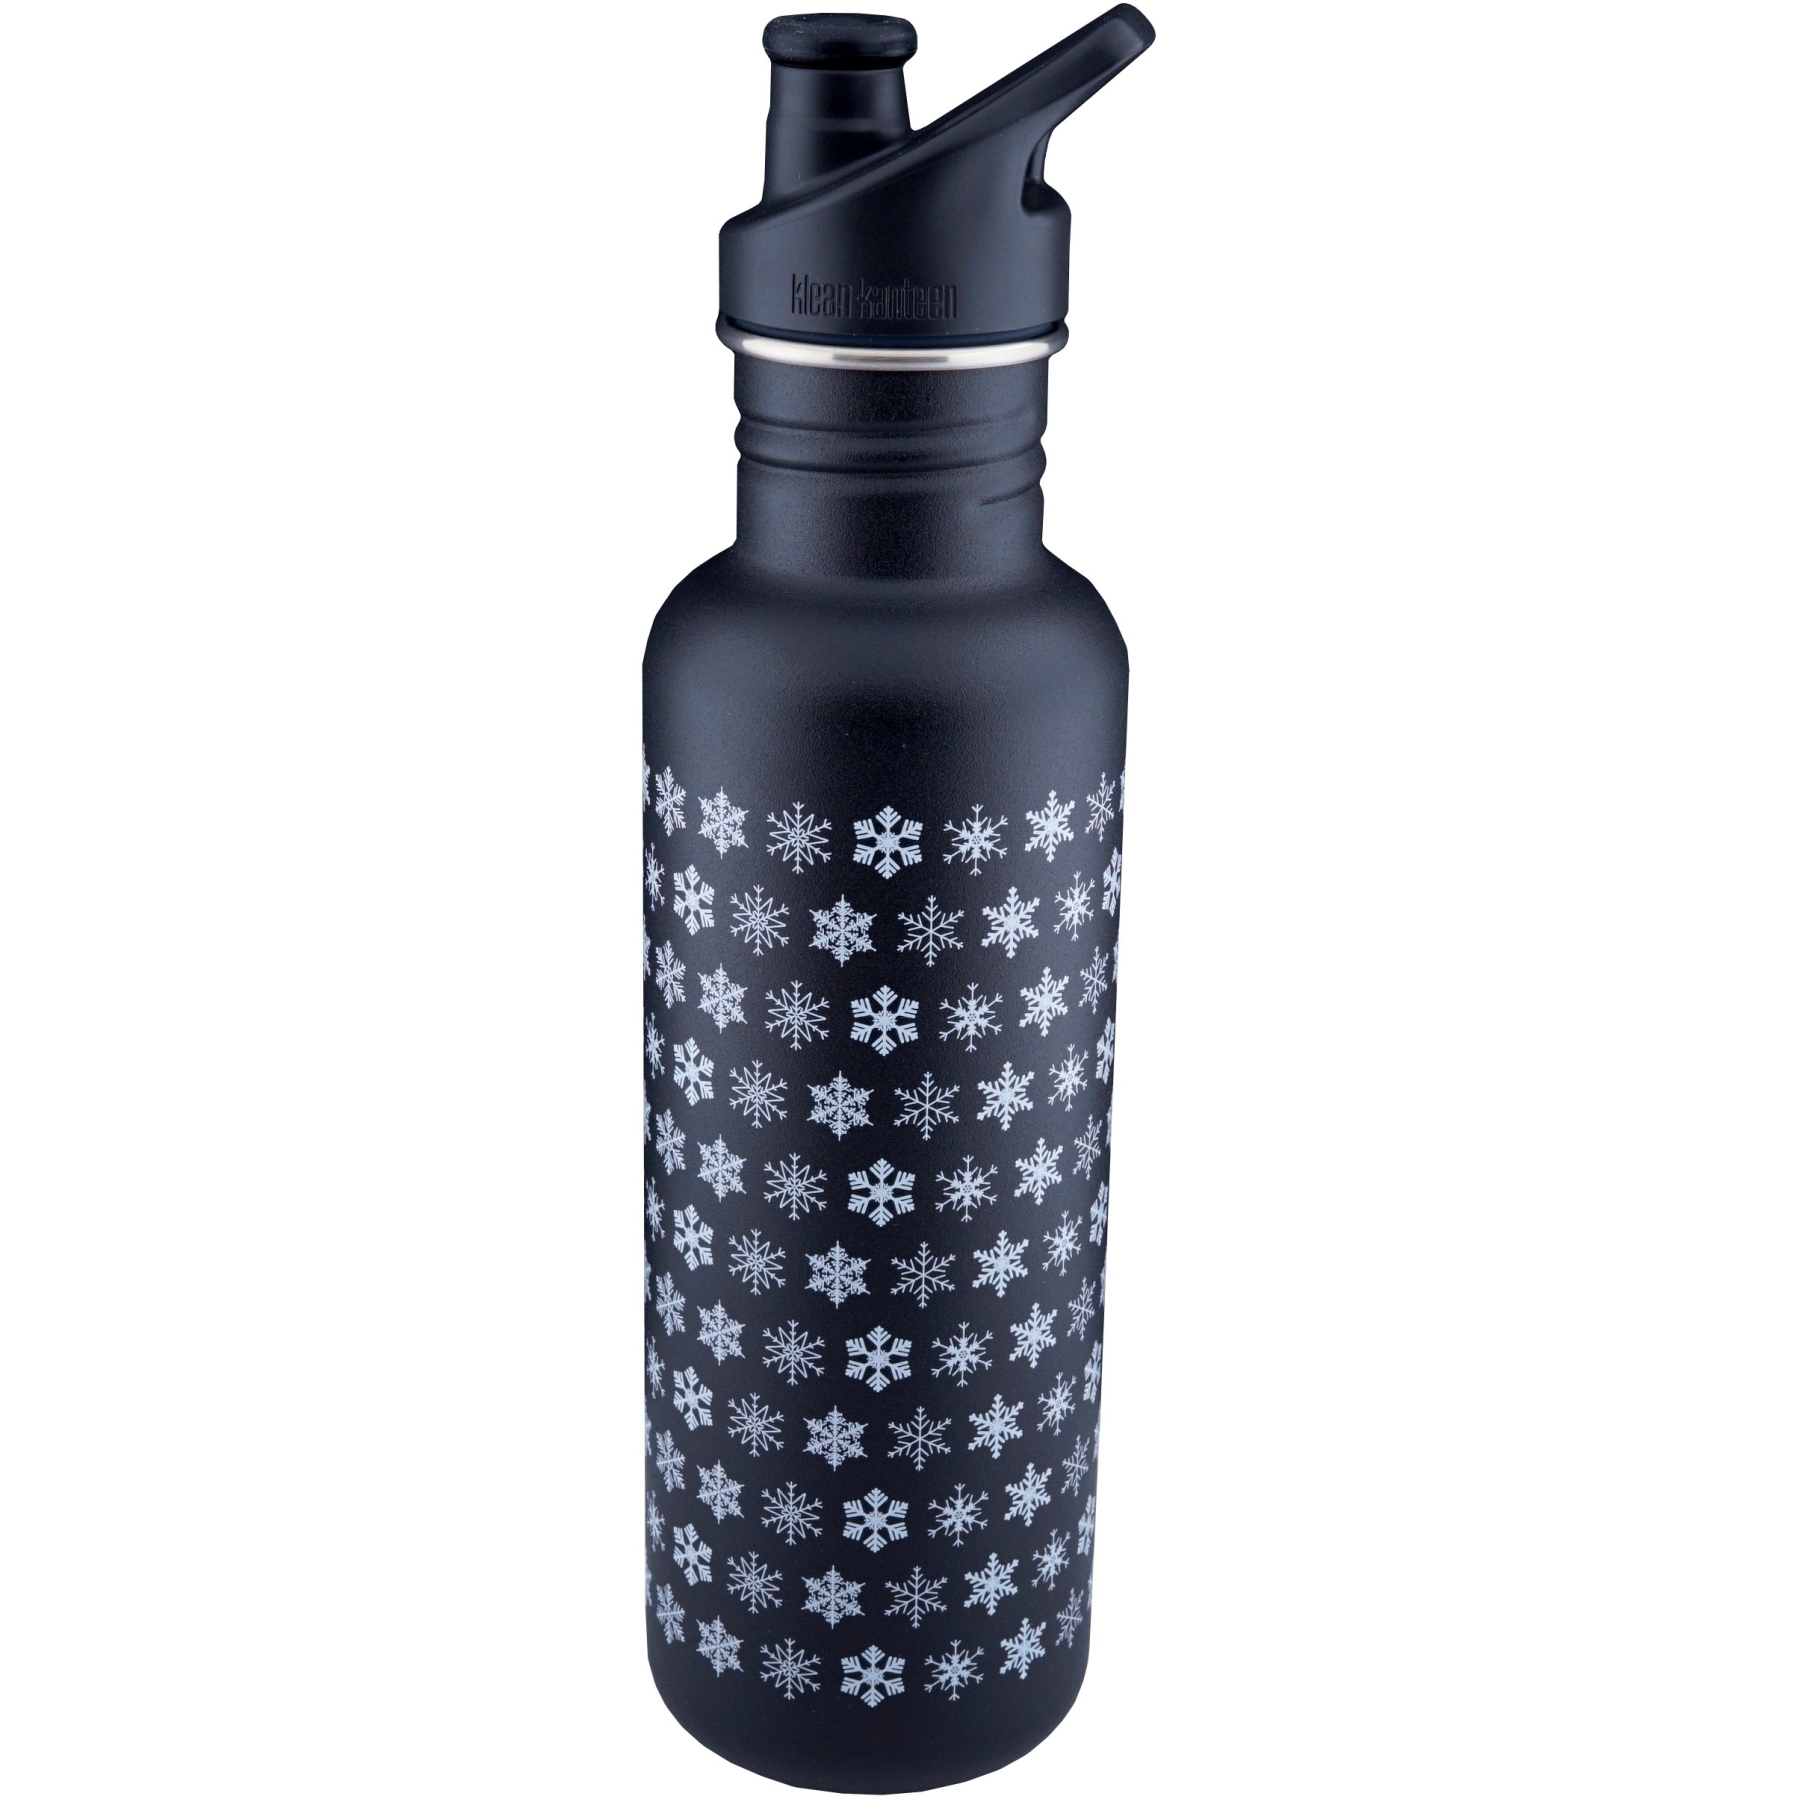 Produktbild von Klean Kanteen Classic Trinkflasche mit Sport Cap - 800 ml - Black Crystals